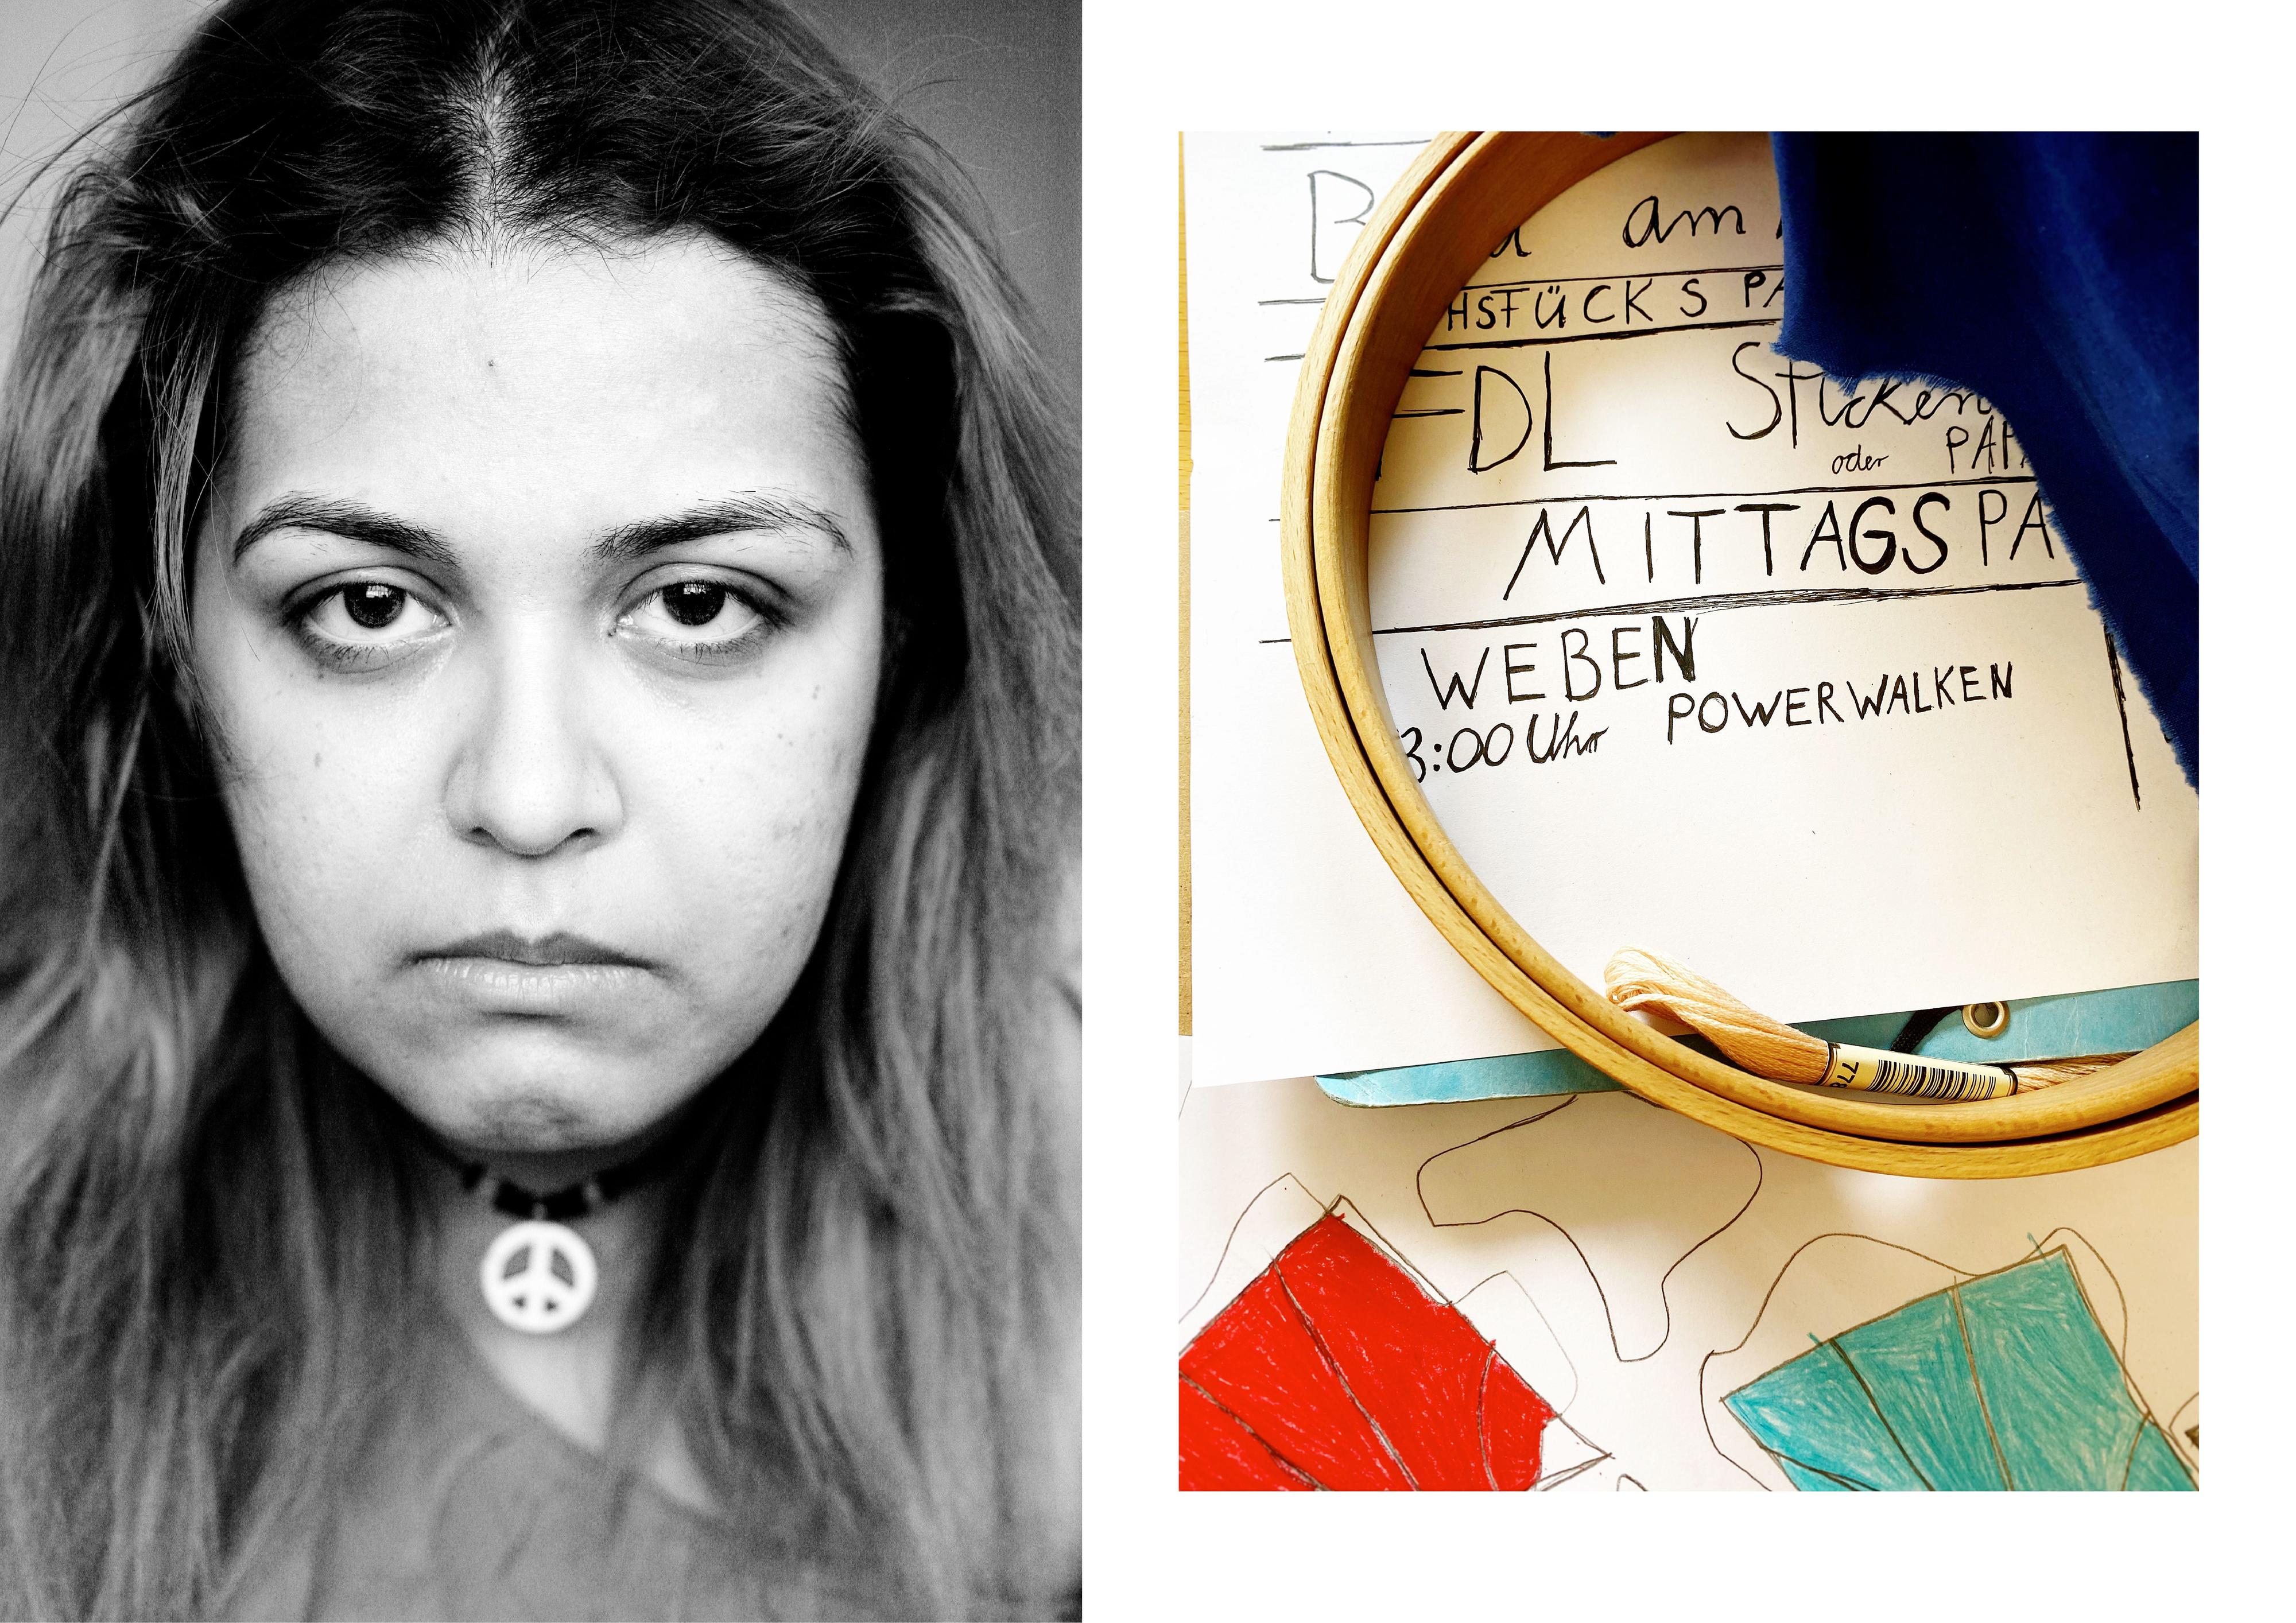 Collage aus zwei Bildern: Links: Porträt einer jungen Frau - sie trägt eine Kette mit Friedenszeichen. Rechts: ein Stundenplan - darauf liegen ein Stickrahmen und Garn.